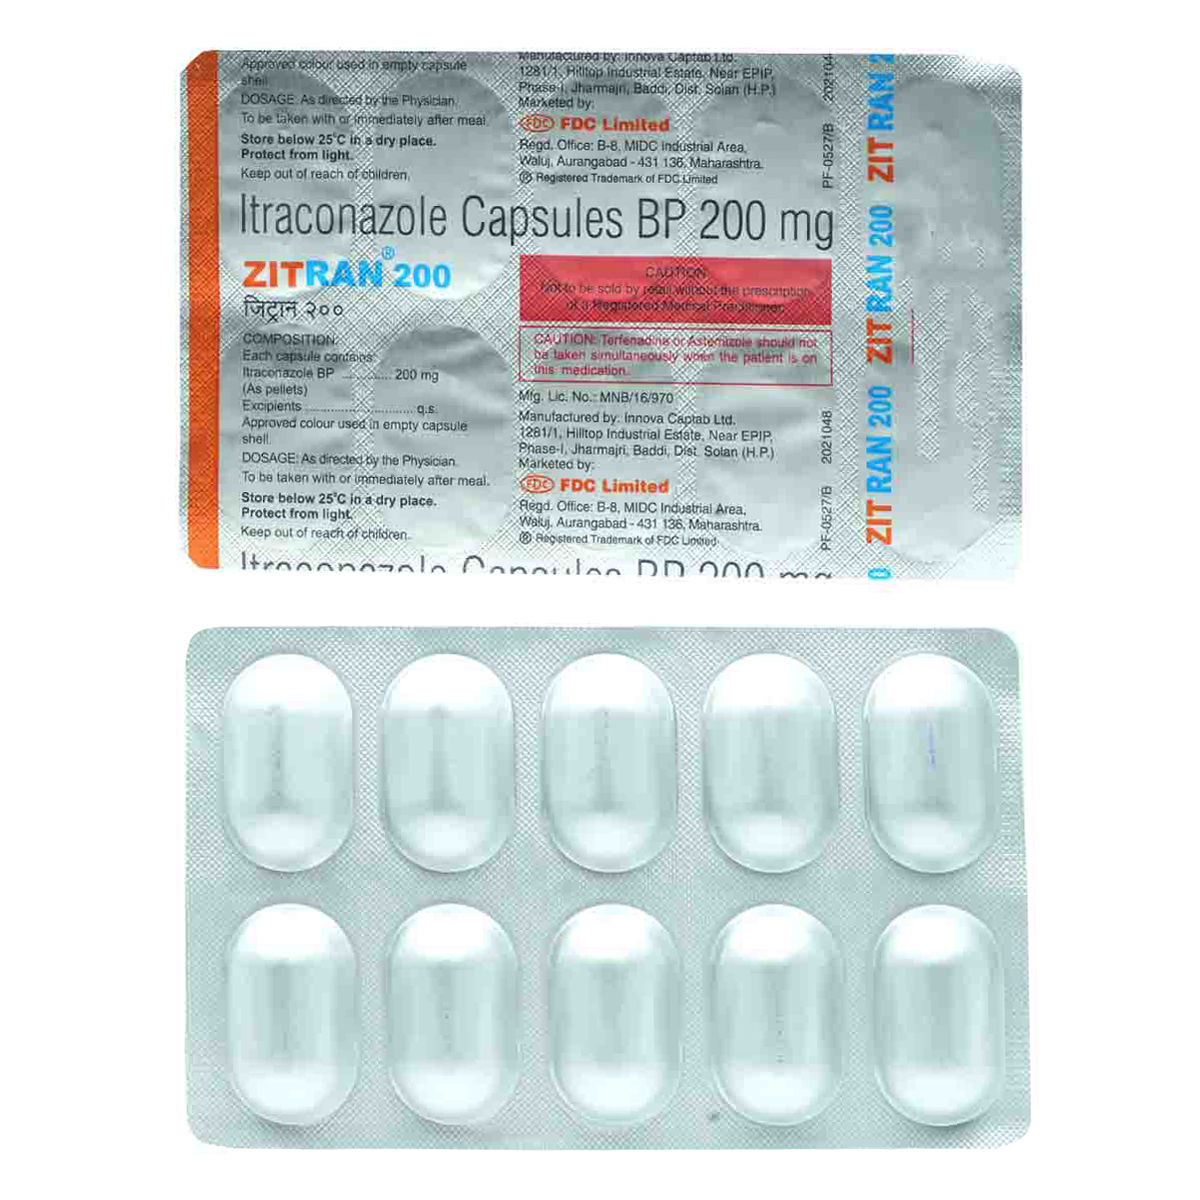 Buy Zitran 200 mg Capsule 10's Online